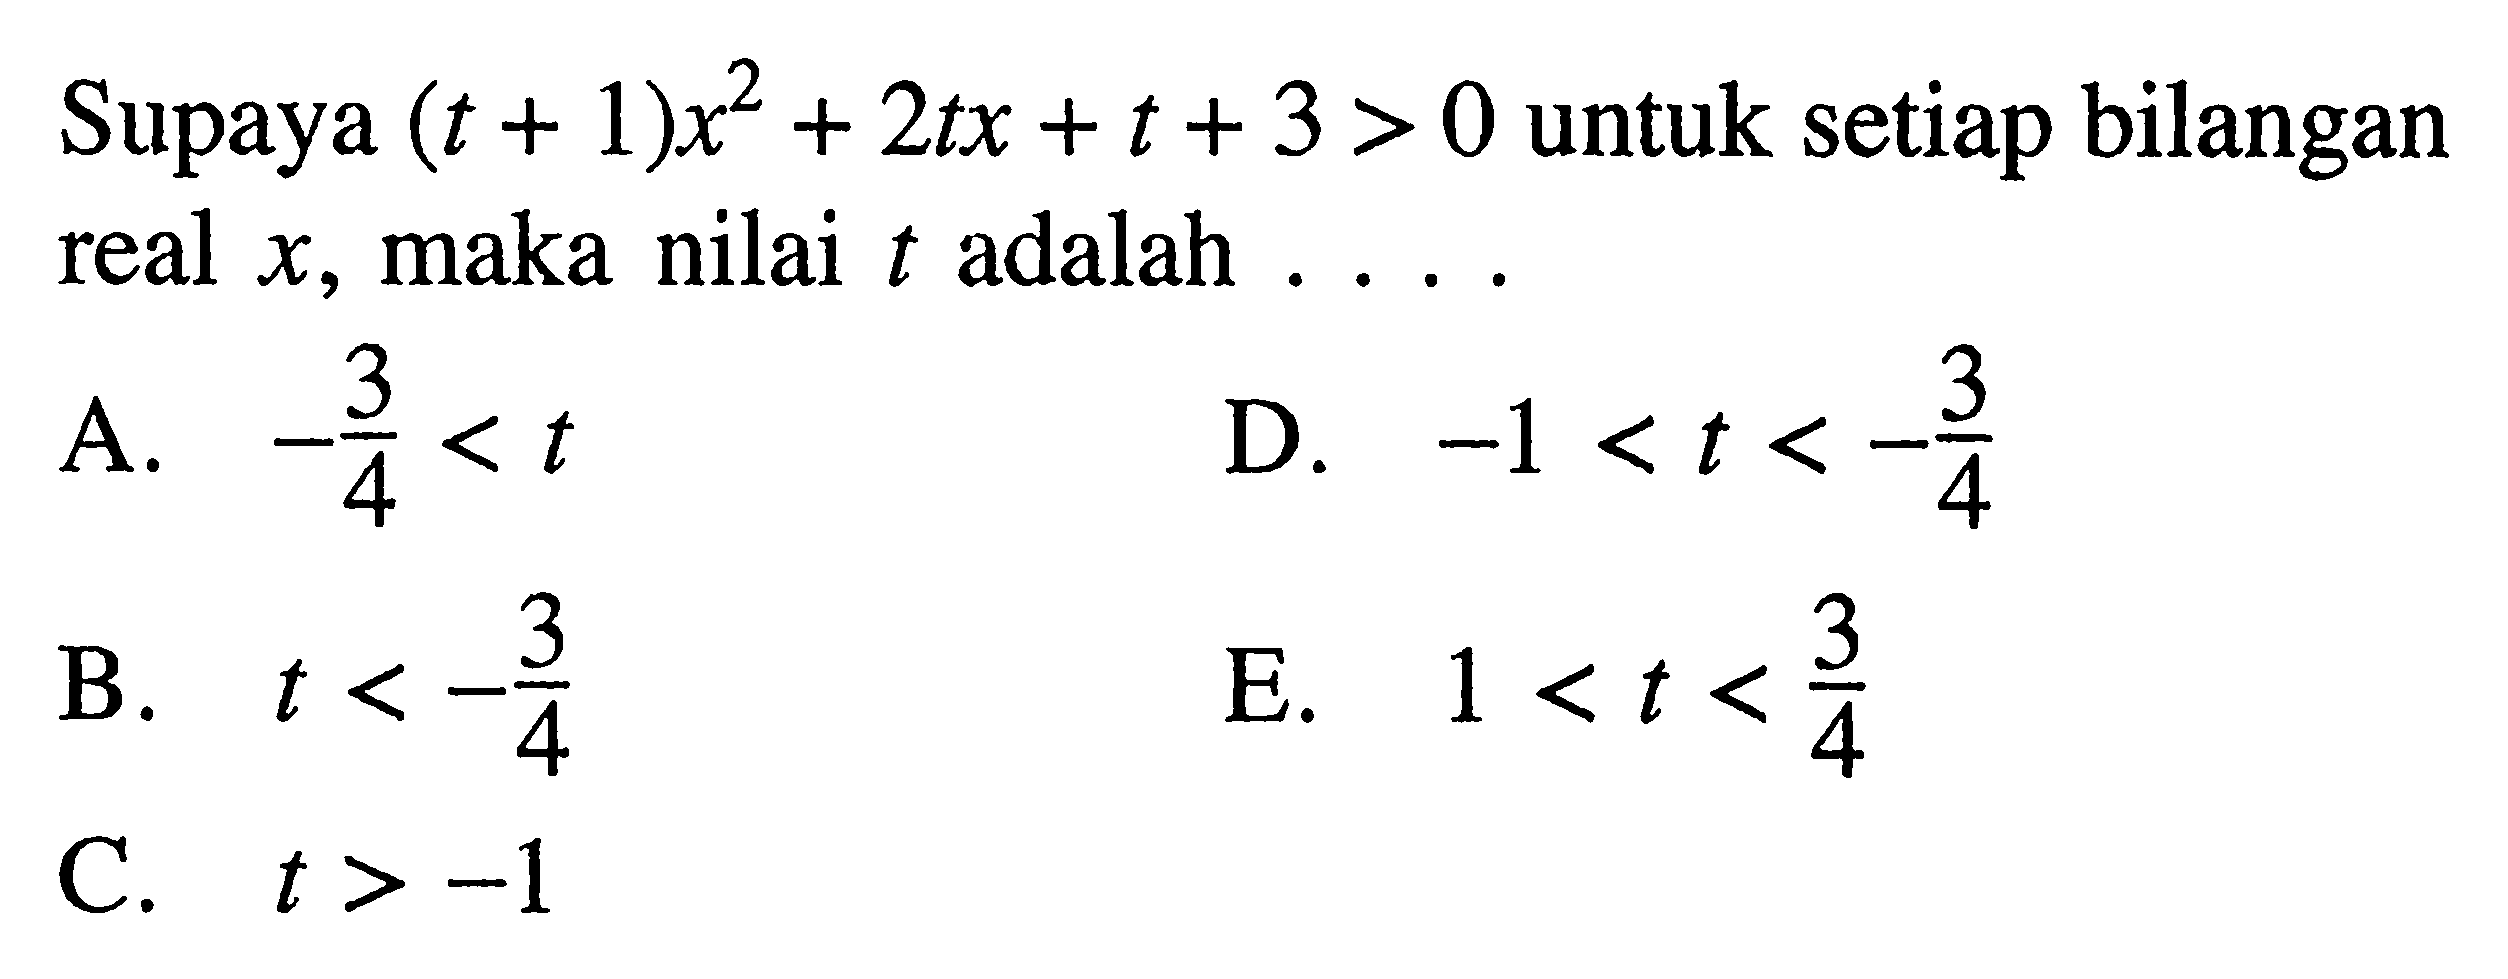 Supaya (t+1)x^2+2tx+t+3>0 untuk setiap bilangan real x, maka nilai t adalah....